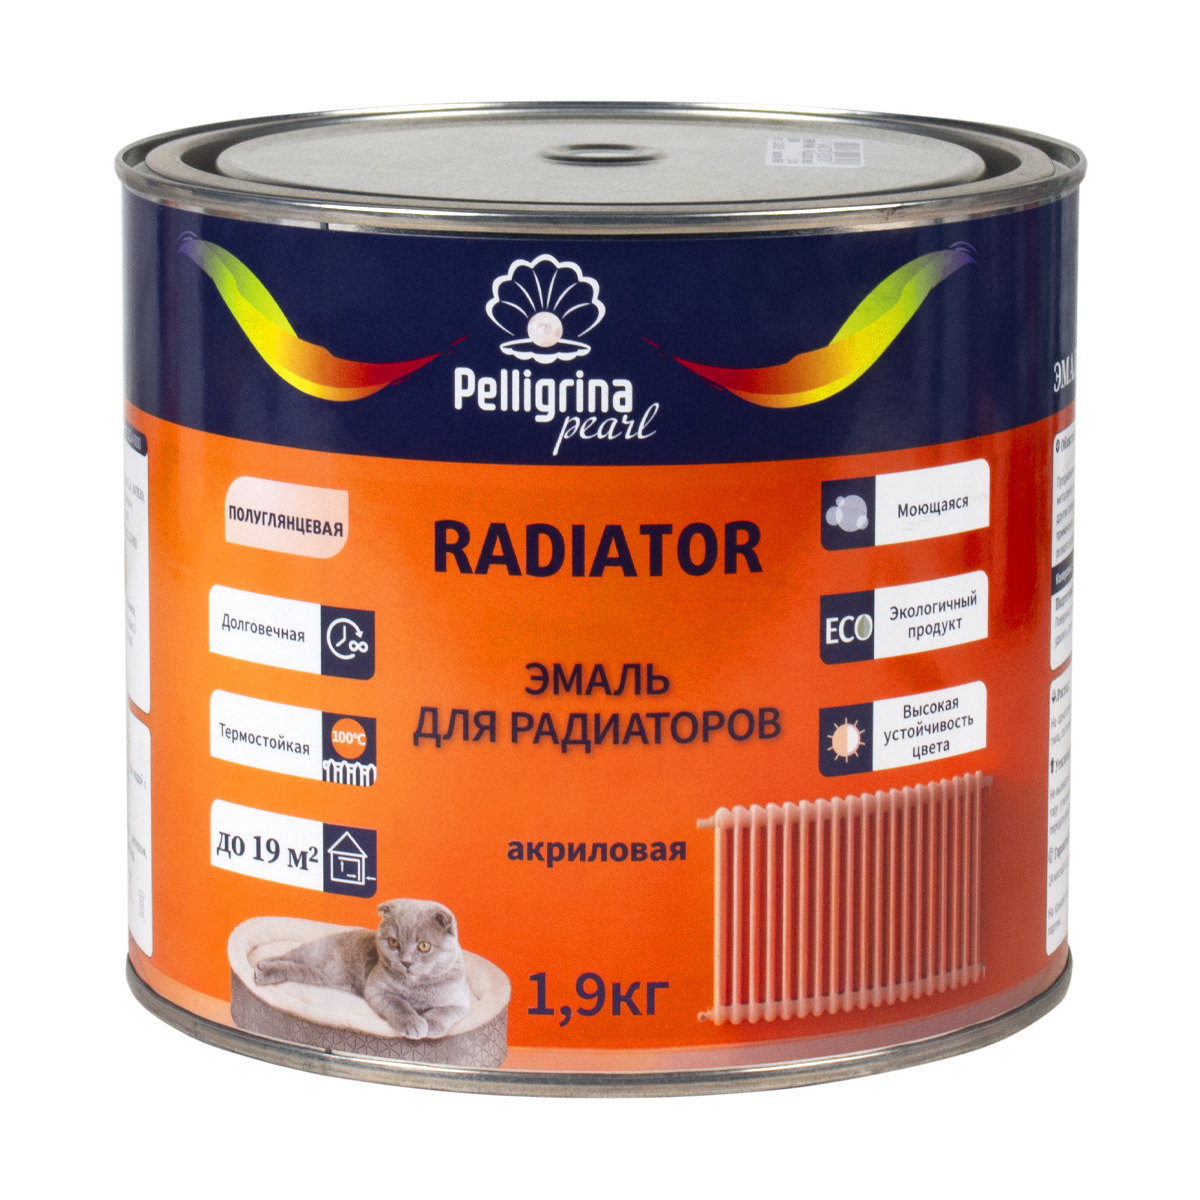 Эмаль для радиаторов Pelligrina Pearl PP-074, акриловая, полуглянцевая, белая, 1,9 кг эмаль для радиаторов pelligrina pearl pp 074 акриловая полуглянцевая белая 1 9 кг